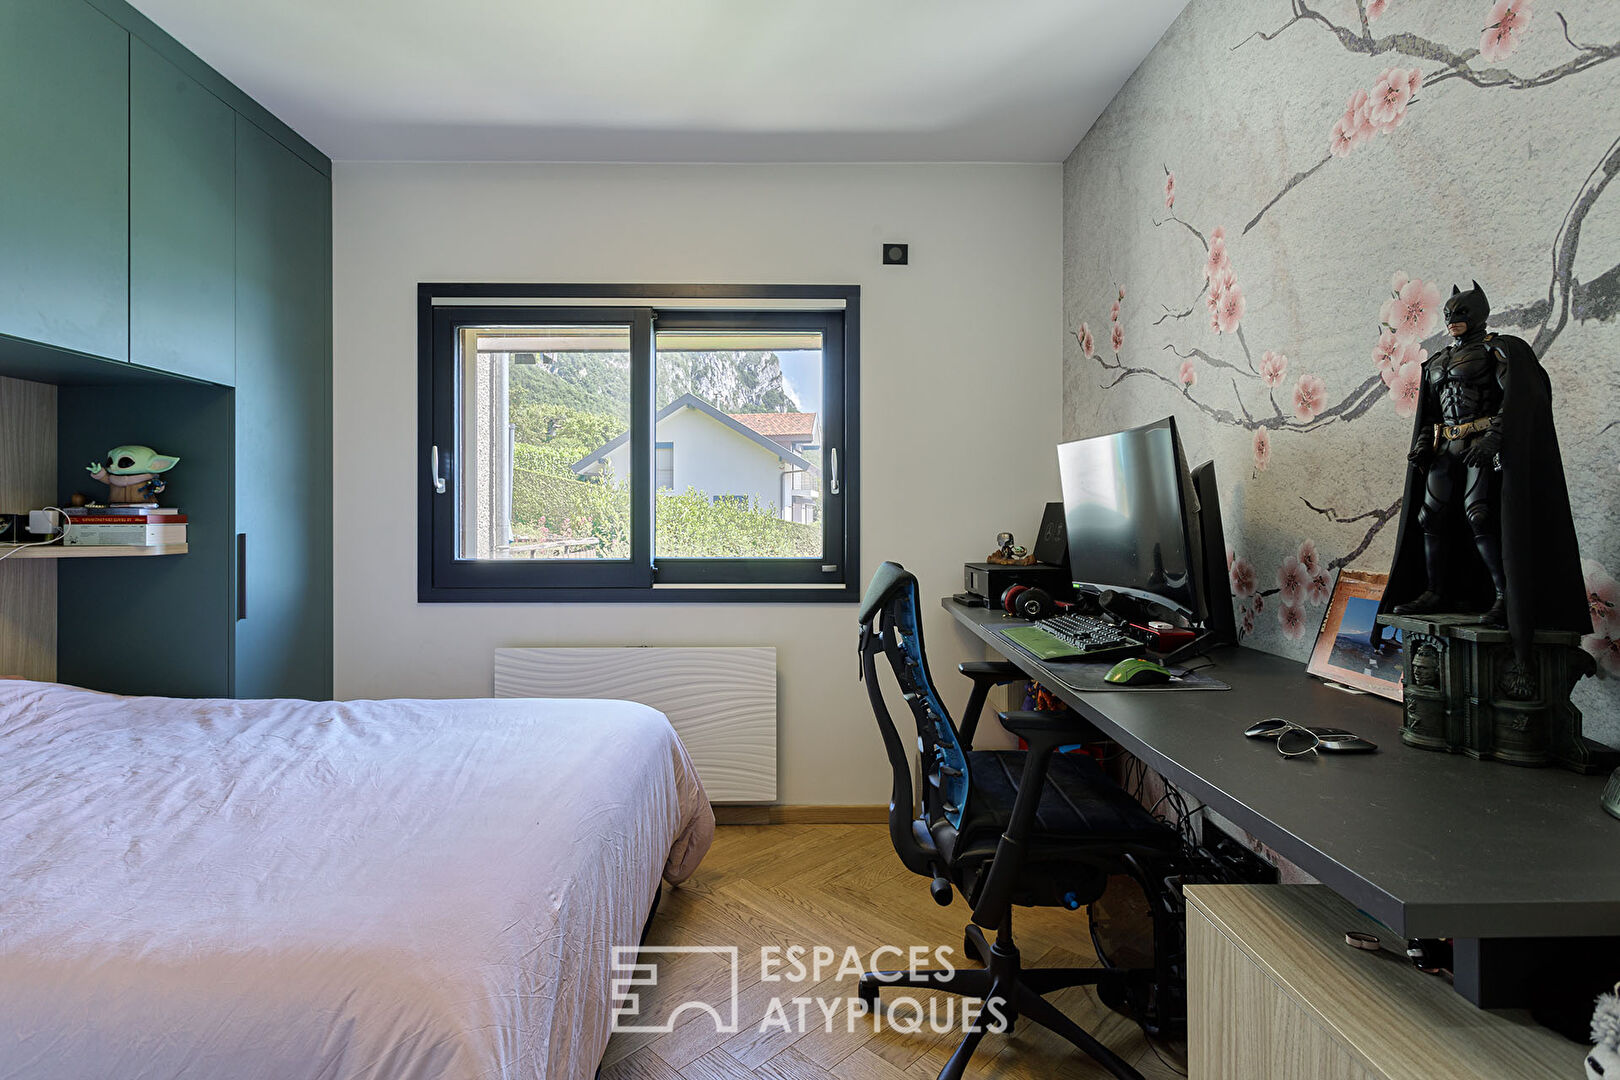 Appartement contemporain meublé avec vue d’exception sur le lac et la baie d’Annecy